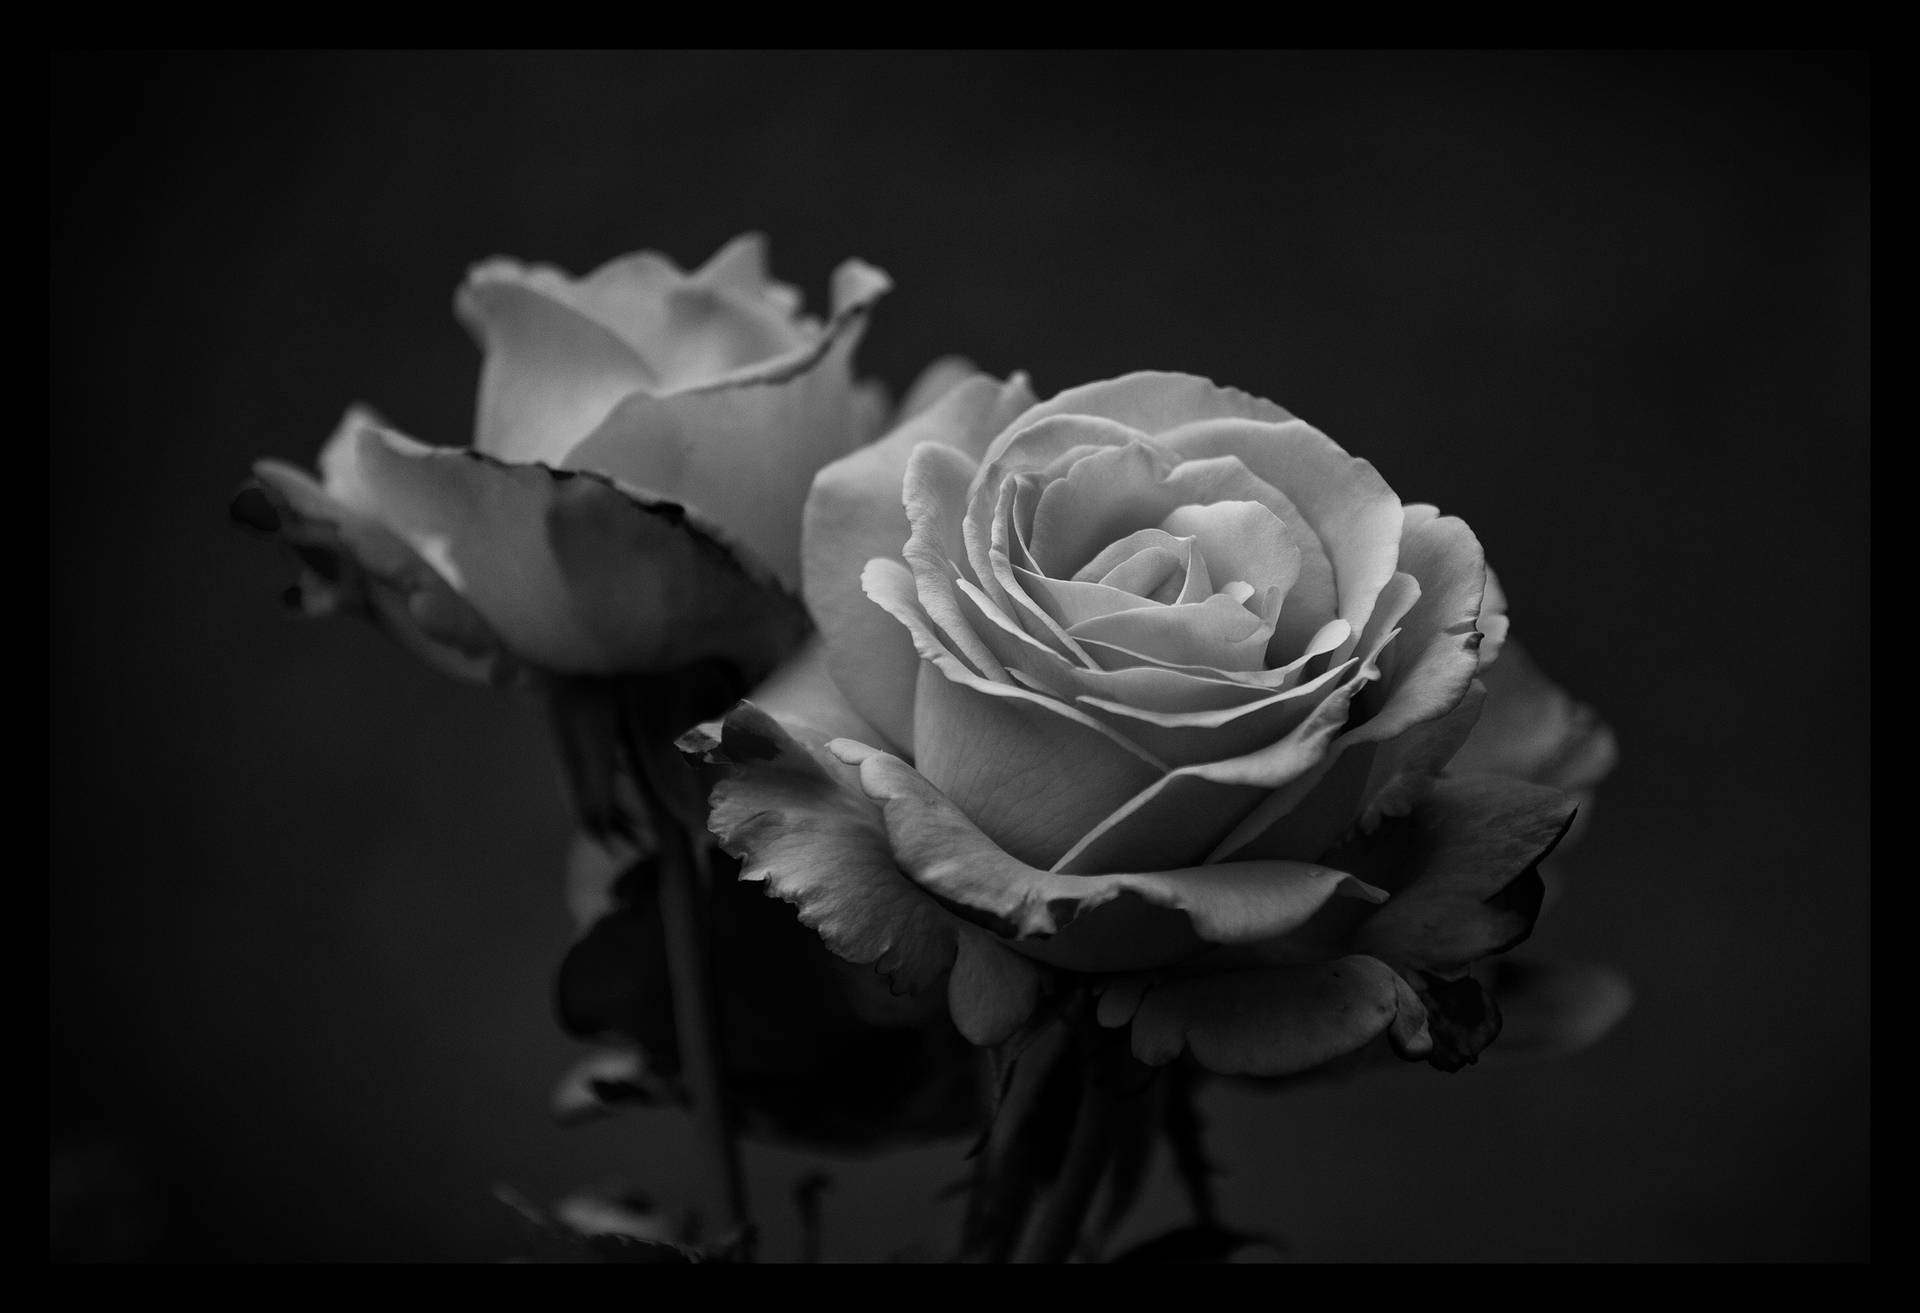 Dosflores De Rosas Negras Y Blancas. Fondo de pantalla